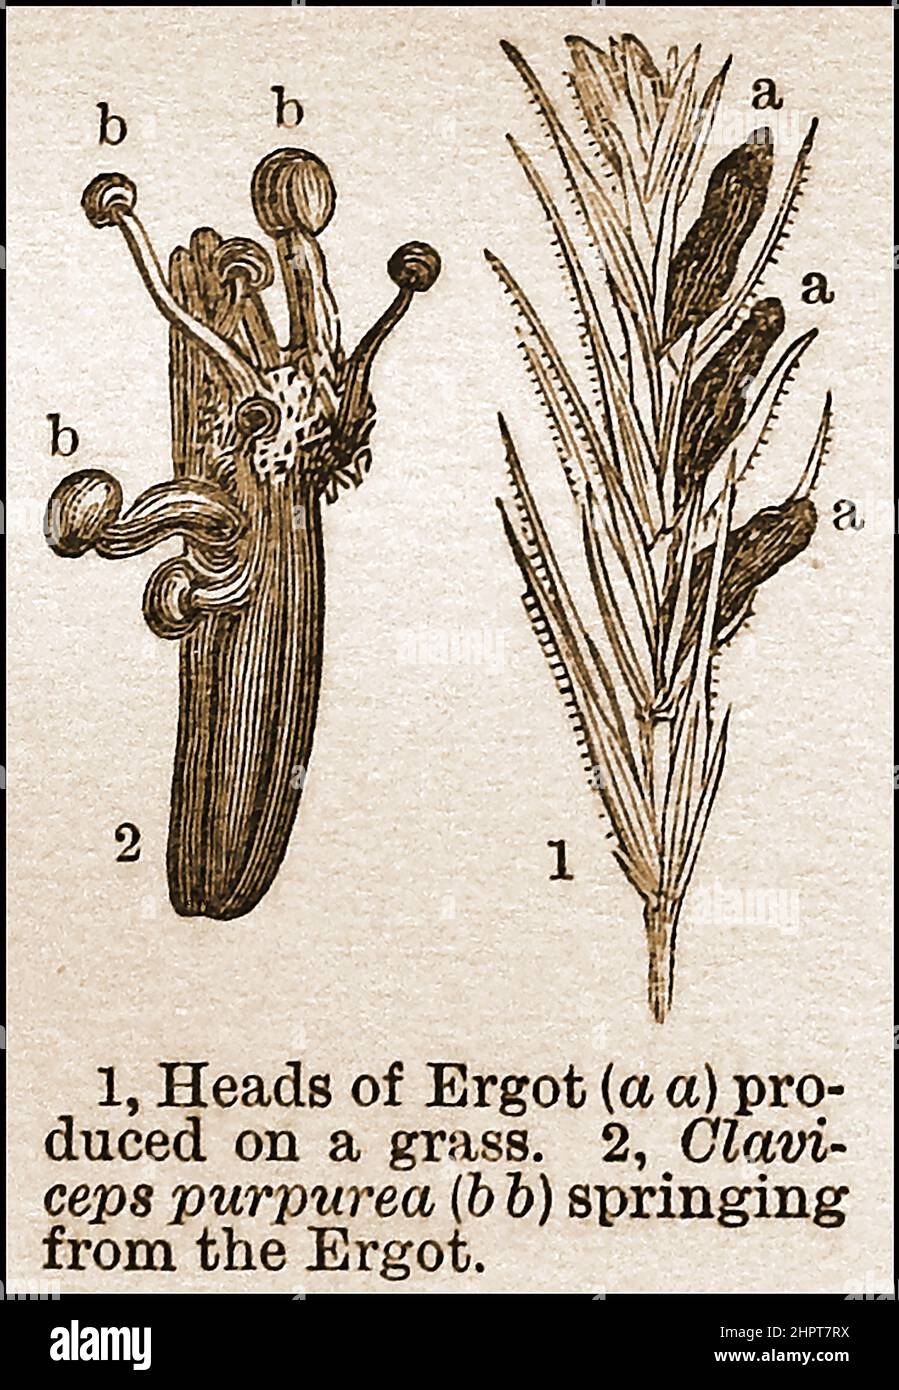 Eine 19th-Jahrhundert-Illustration des Pilzes, der auf Roggengras wächst. Obwohl es im Wesentlichen giftig ist, wurde es häufig in Medikamenten und zur Synthese des halluzinogenen Medikaments Lysergsäure Diethylamid (LSD) verwendet. Stockfoto